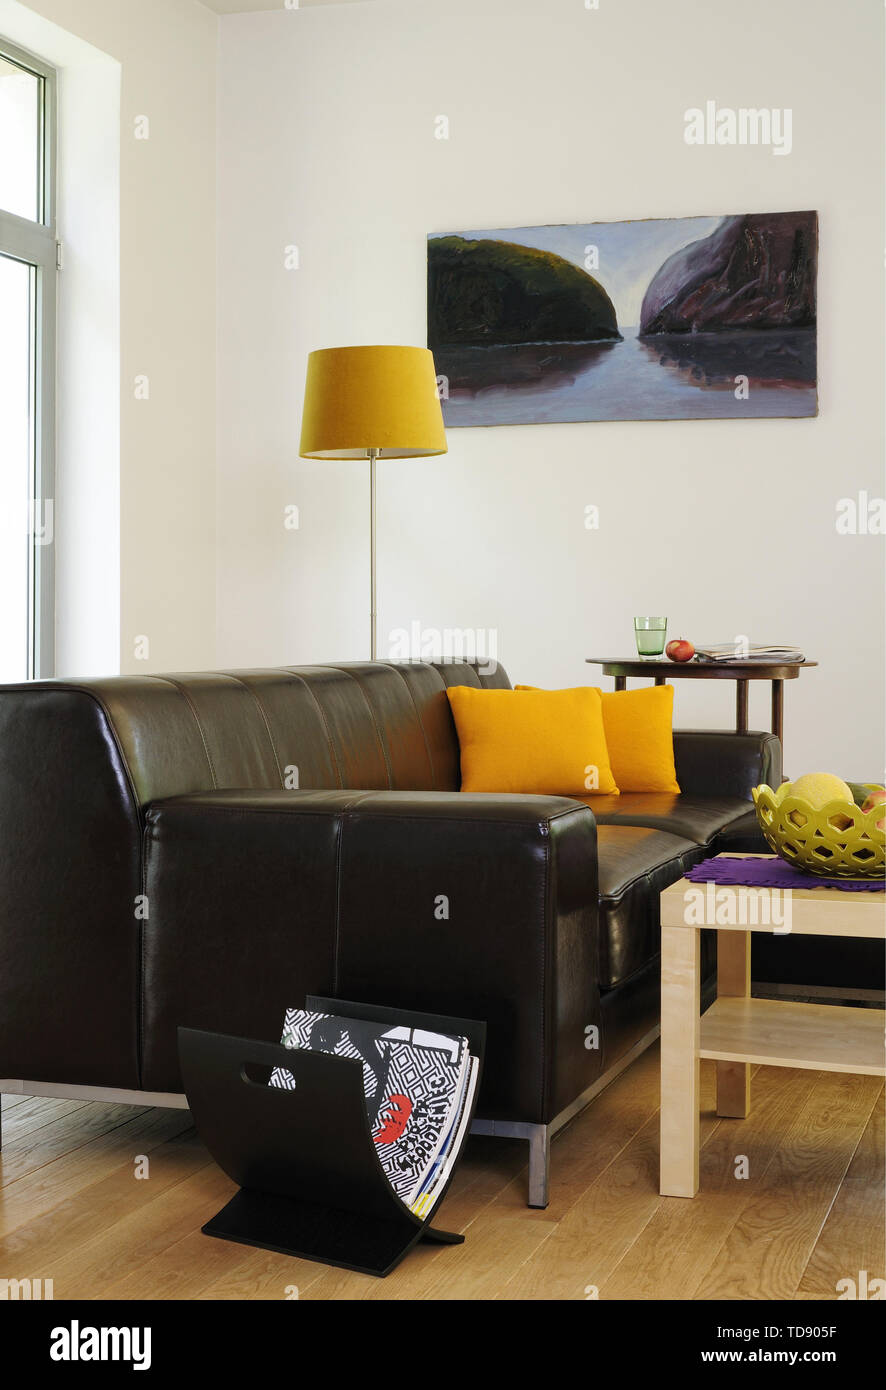 Wohnzimmer Ideen Fur Schwarzes Sofa Wie Richtig Kombinieren